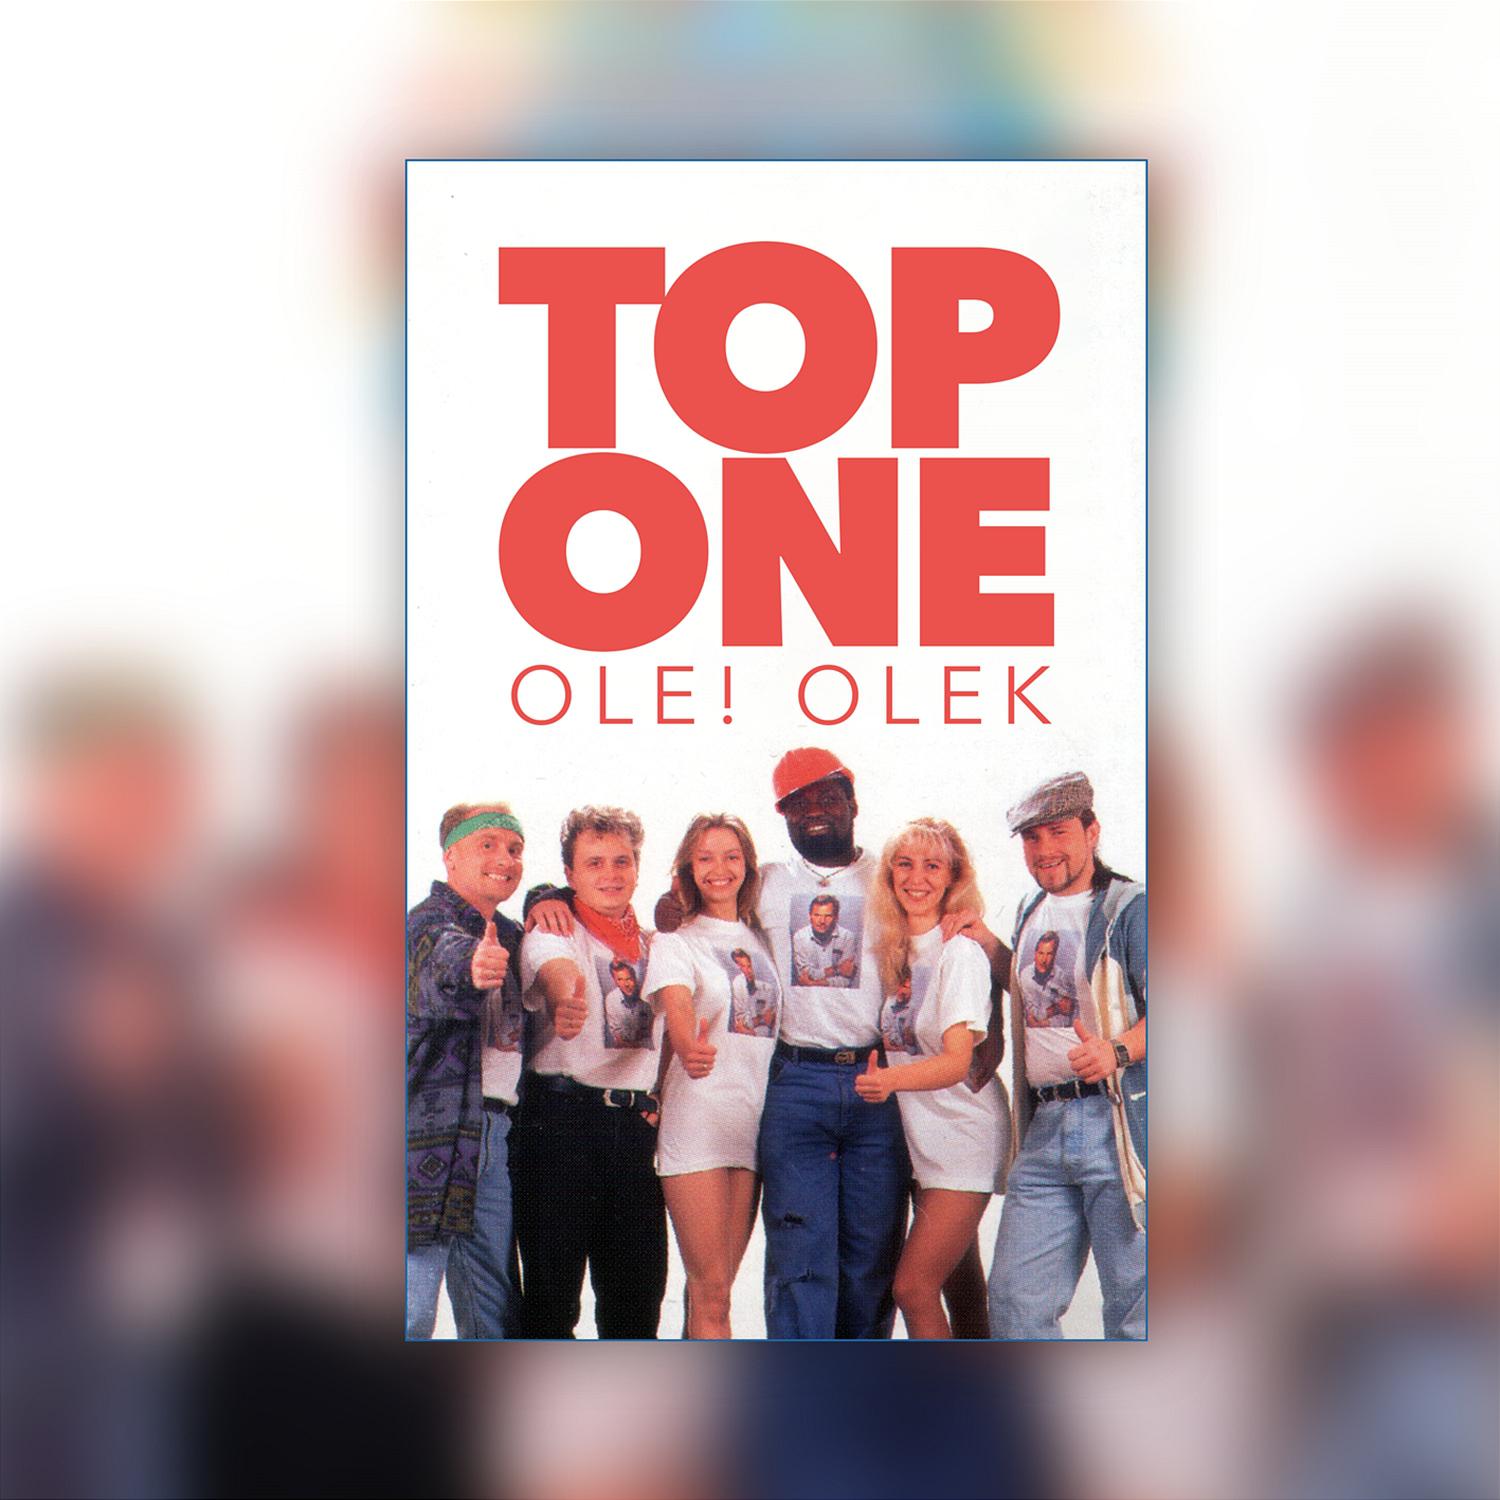 Top One - Ole! Olek